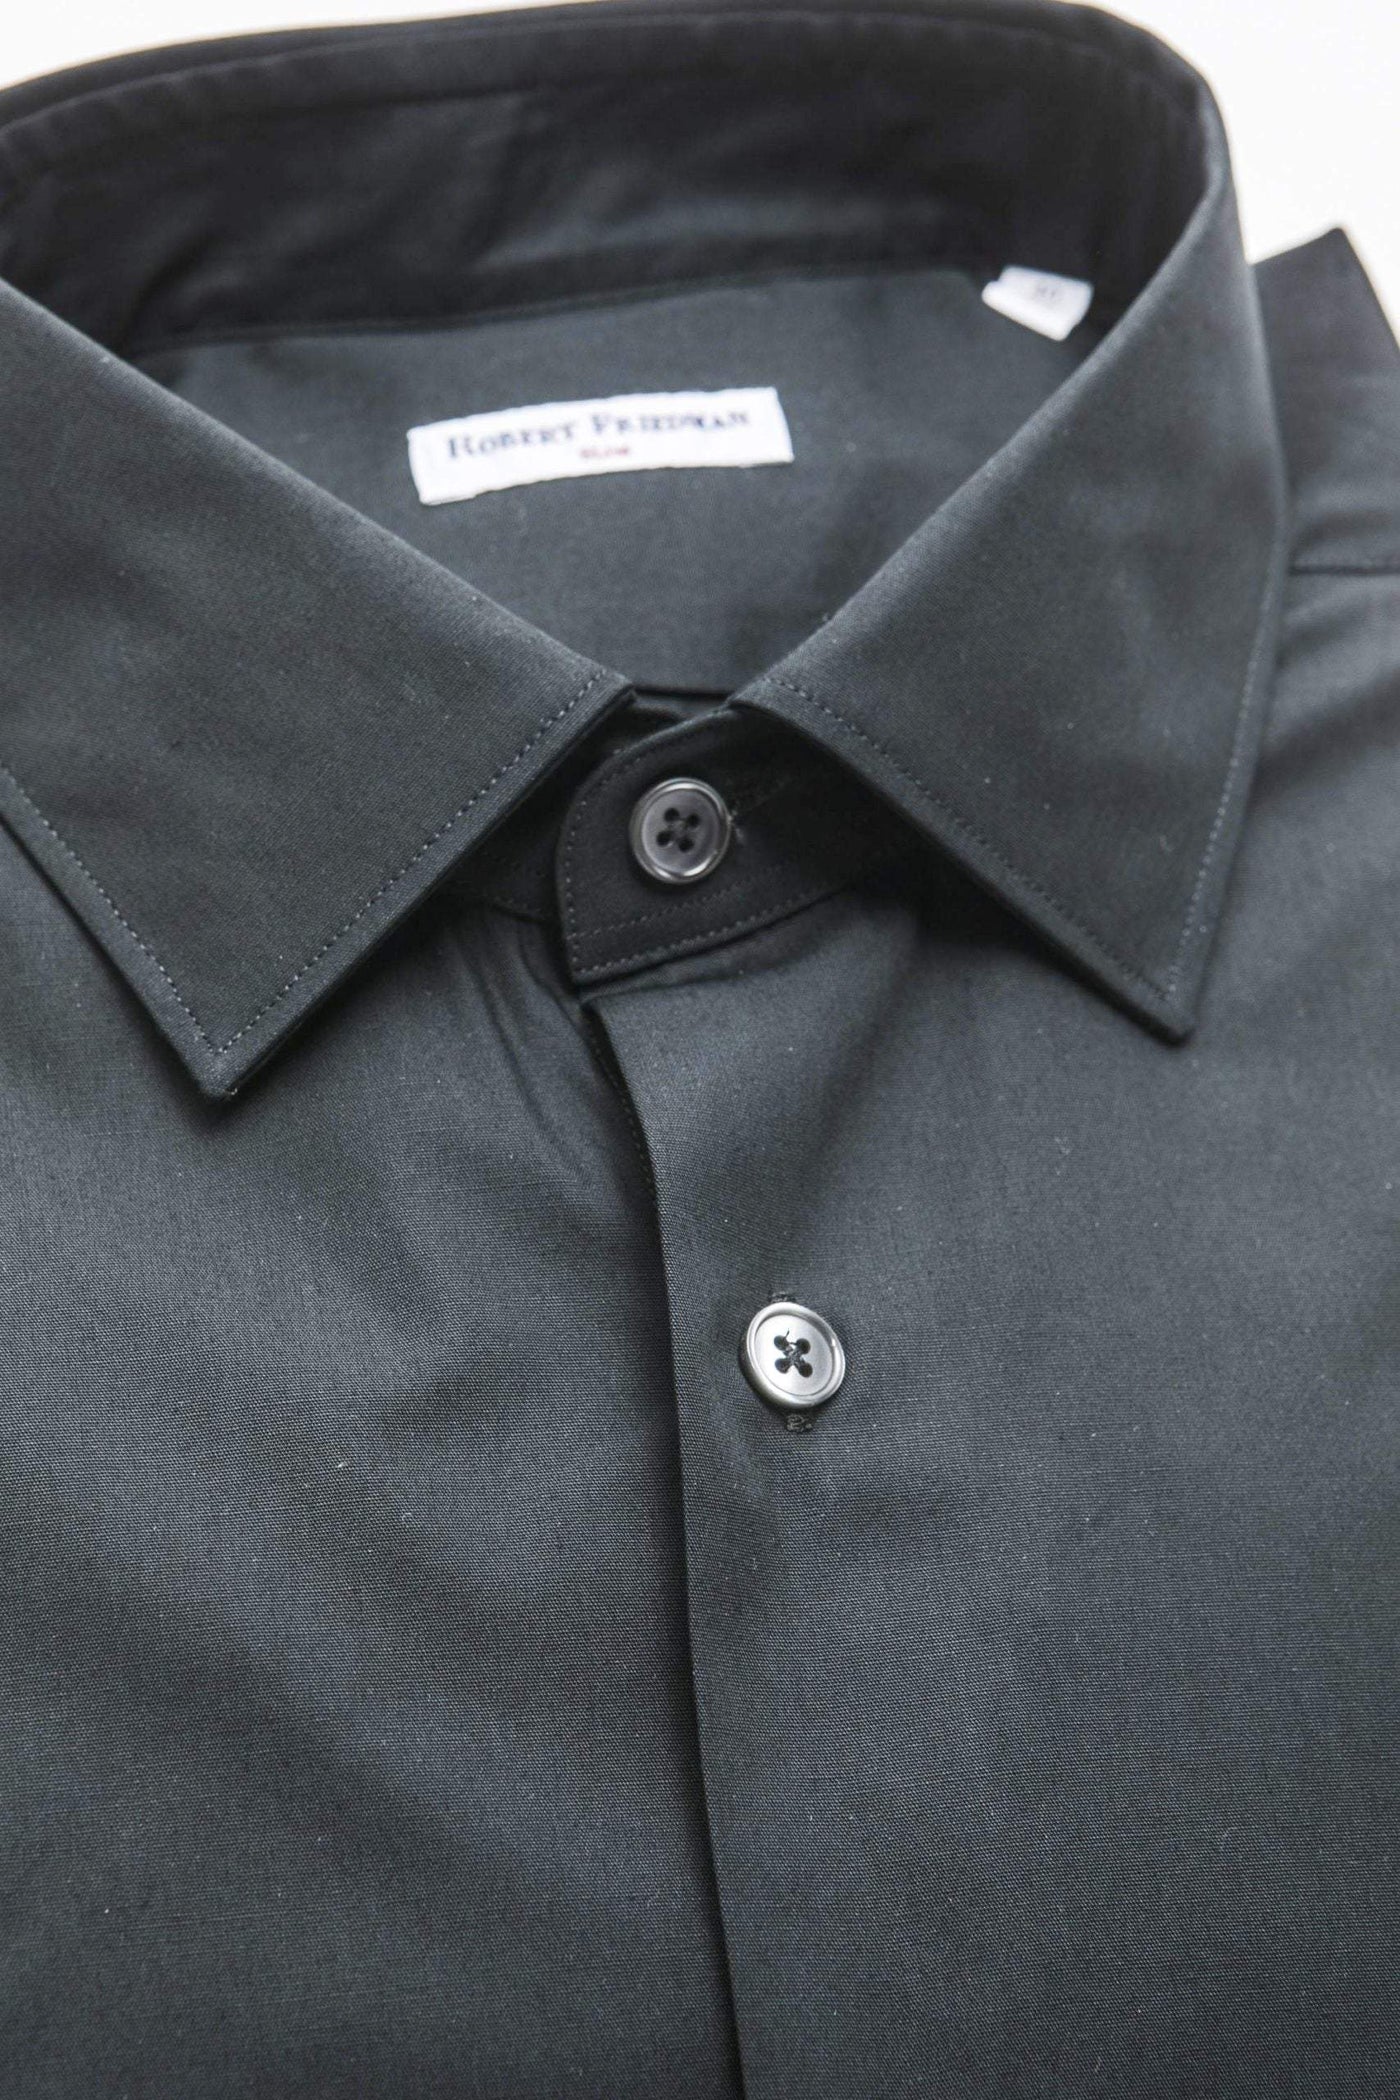 Robert Friedman Black Cotton Shirt #men, Black, feed-1, IT39 | S, IT40 | M, IT41 | L, IT42 | XL, IT43 | 2XL, IT44 | 3XL, Robert Friedman, Shirts - Men - Clothing at SEYMAYKA